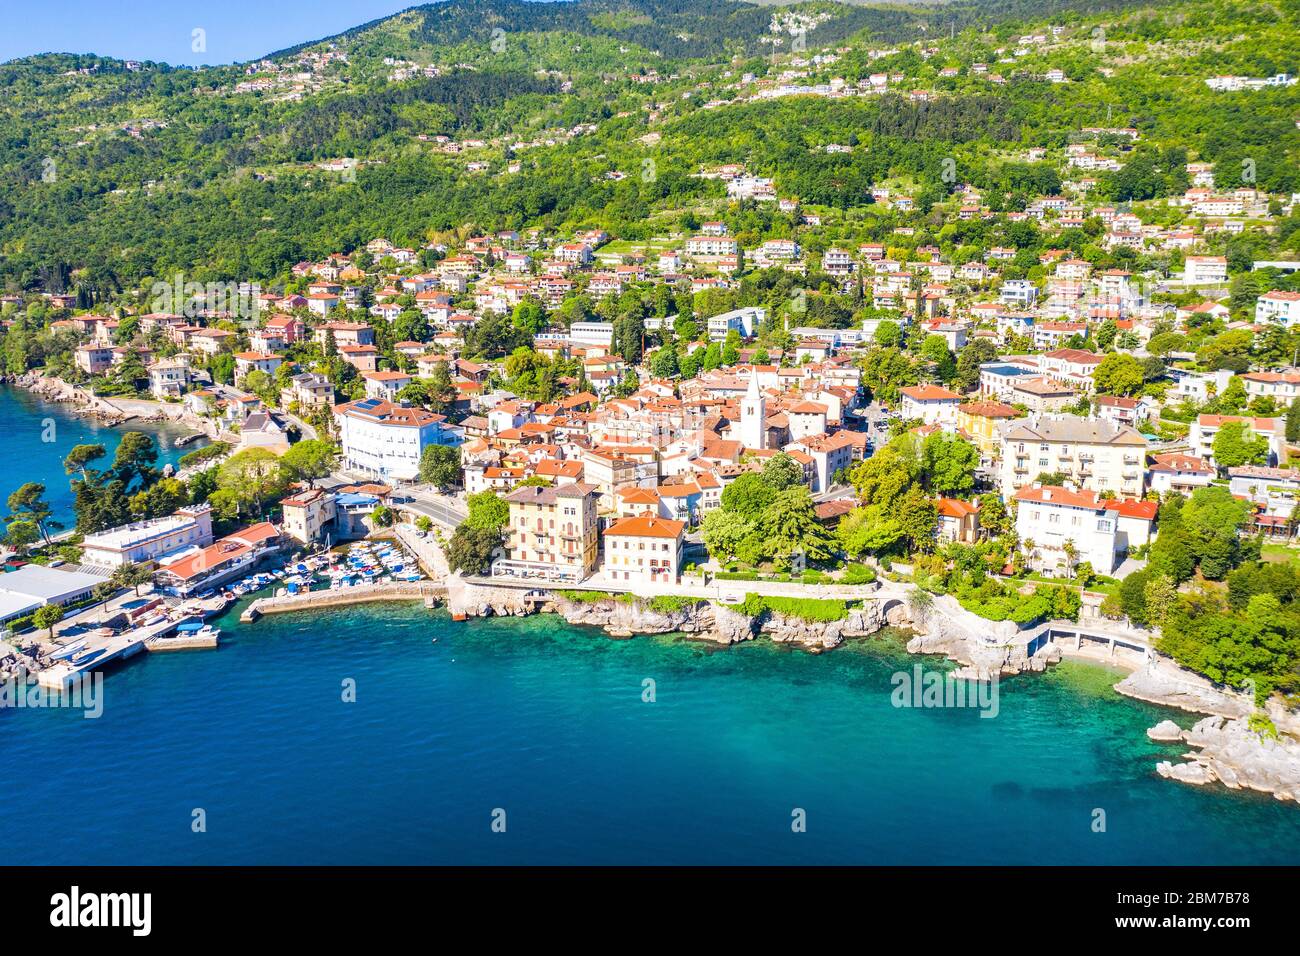 Croatie, belle ville de Lovran et la promenade maritime de Lungomare, vue panoramique aérienne sur la côte de la baie de Kvarner Banque D'Images